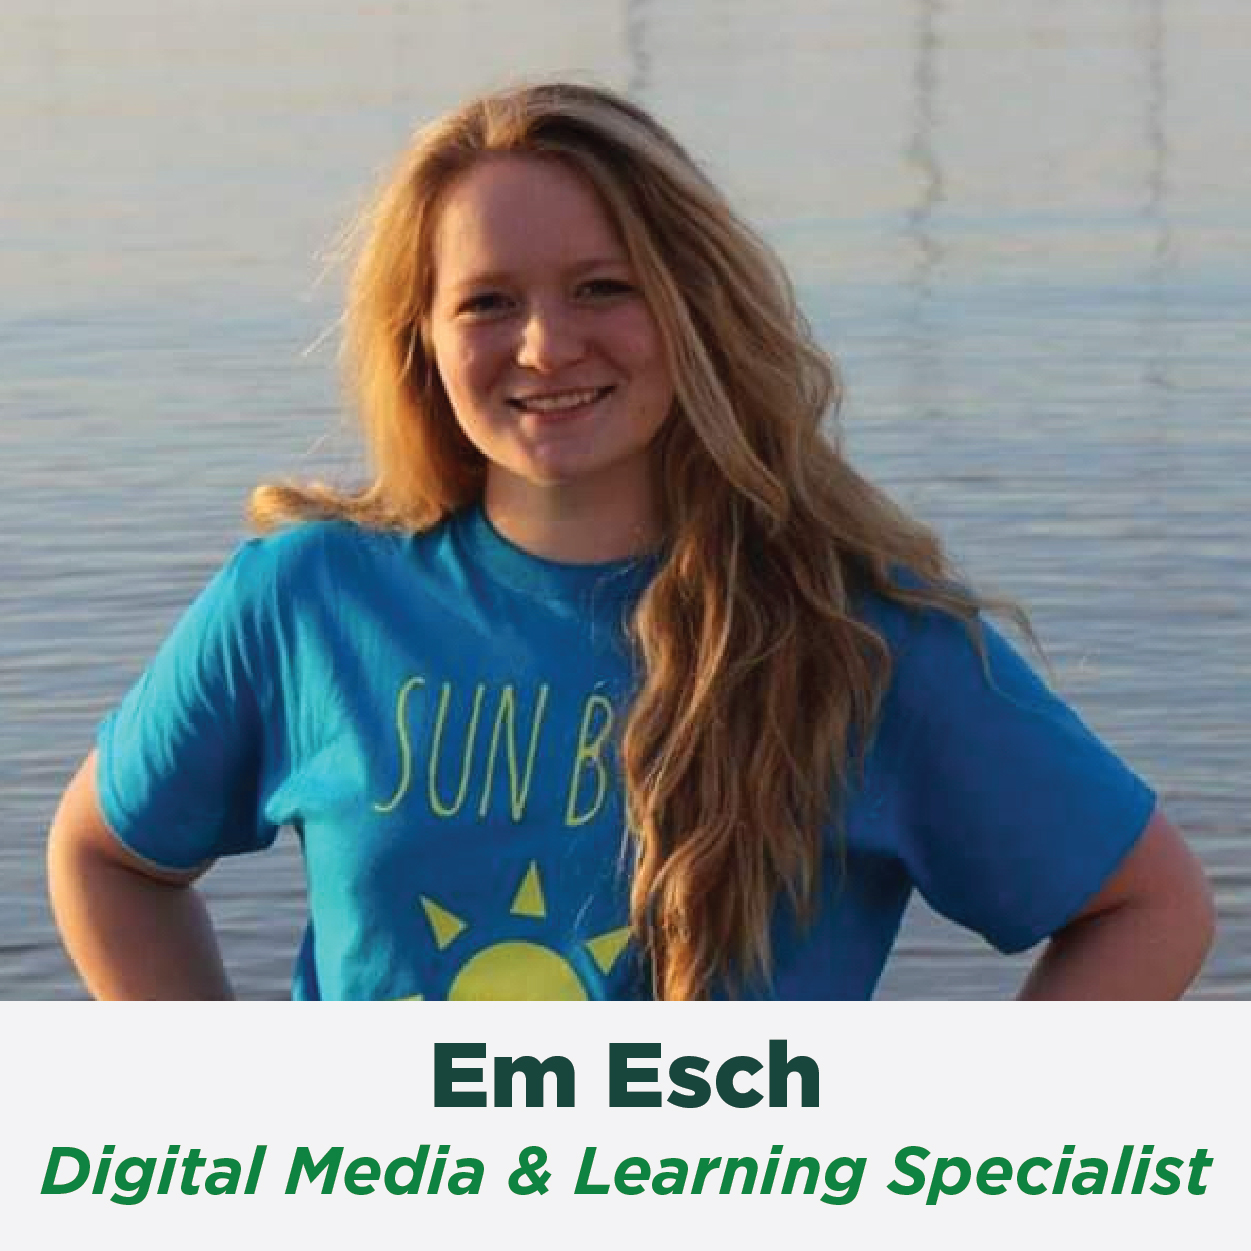 Em Esch, Digital Media & Learning Specialist